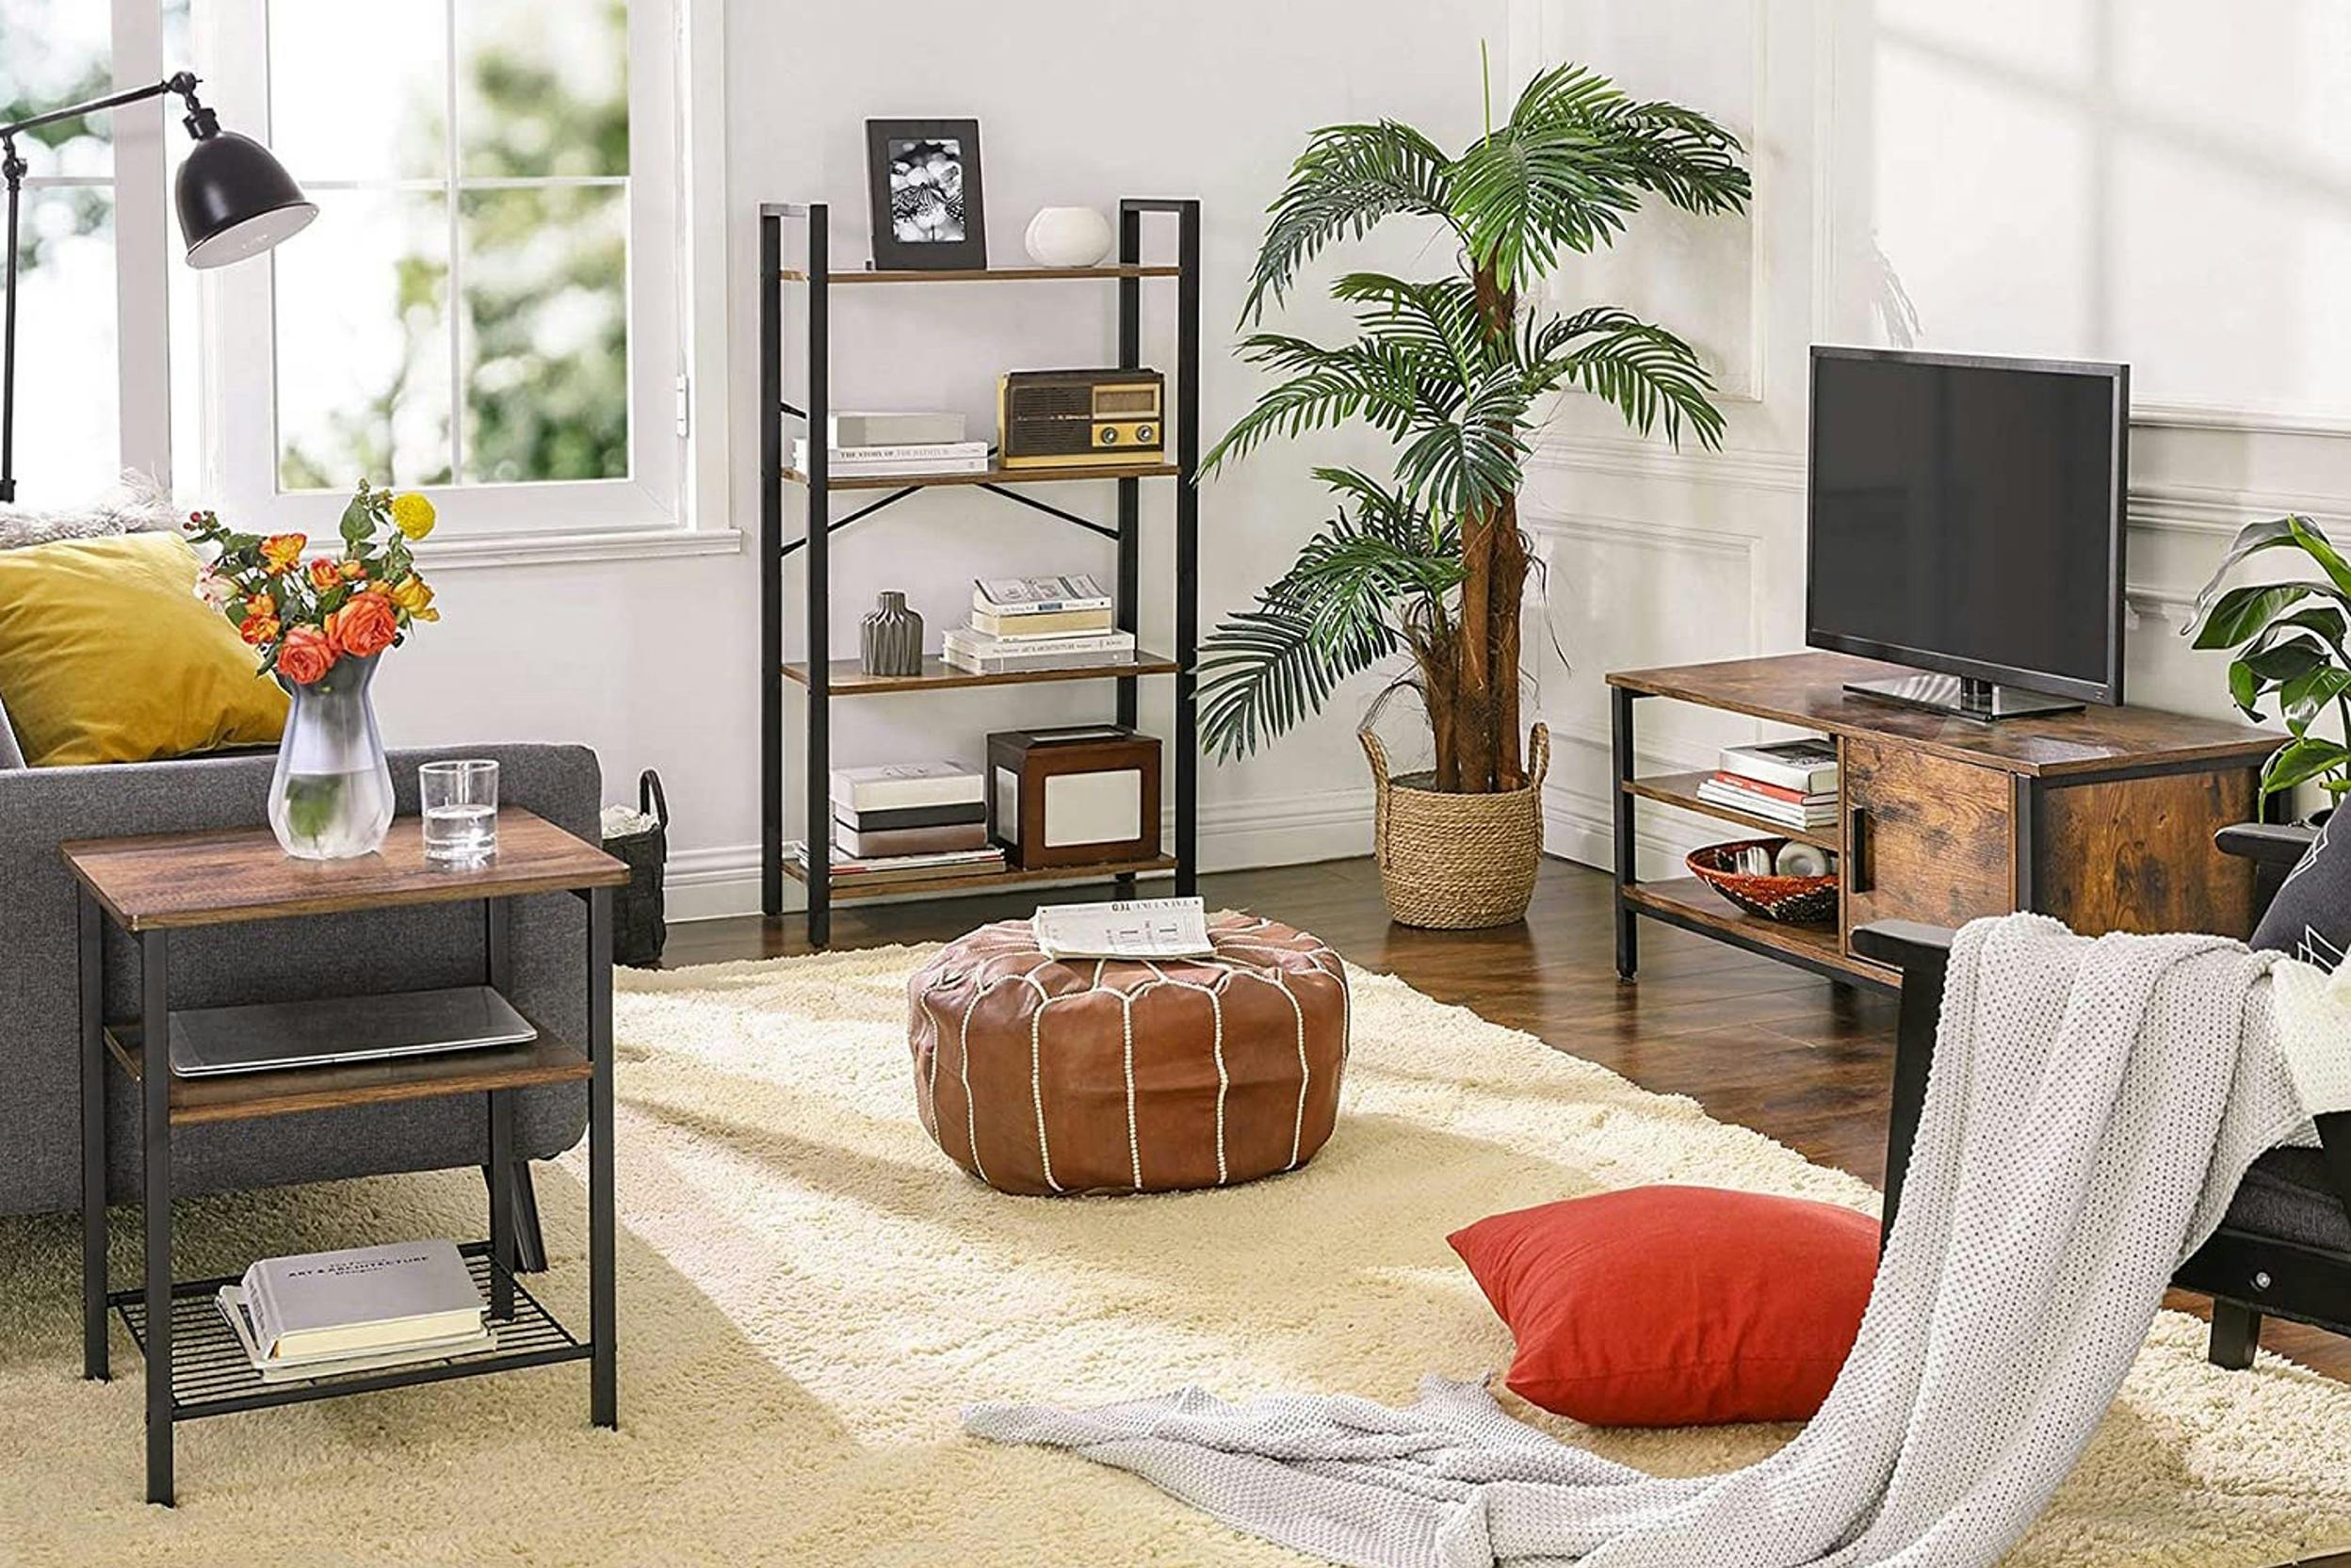 Coin salon meublé avec canapé gris, fauteuil, pouf, tapis, fenêtres, lampes, accessoires déco plantes, et meuble avec tv